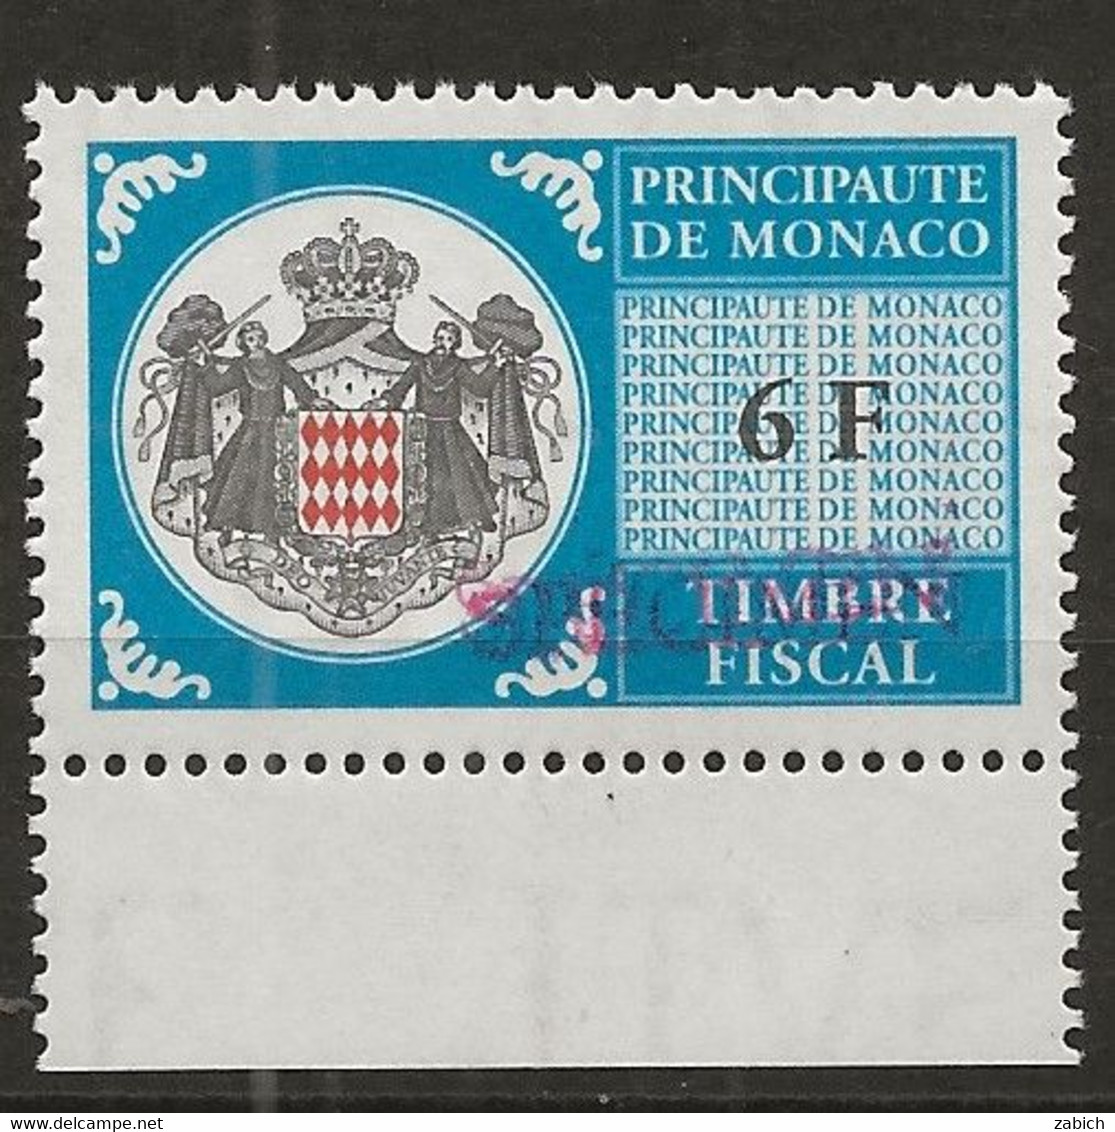 TIMBRES FISCAUX DE MONACO SERIE UNIFIEE N° 101 6F Bleu Rare Surchargé Specimen Neuf Gomme Mnh (**) - Fiscales